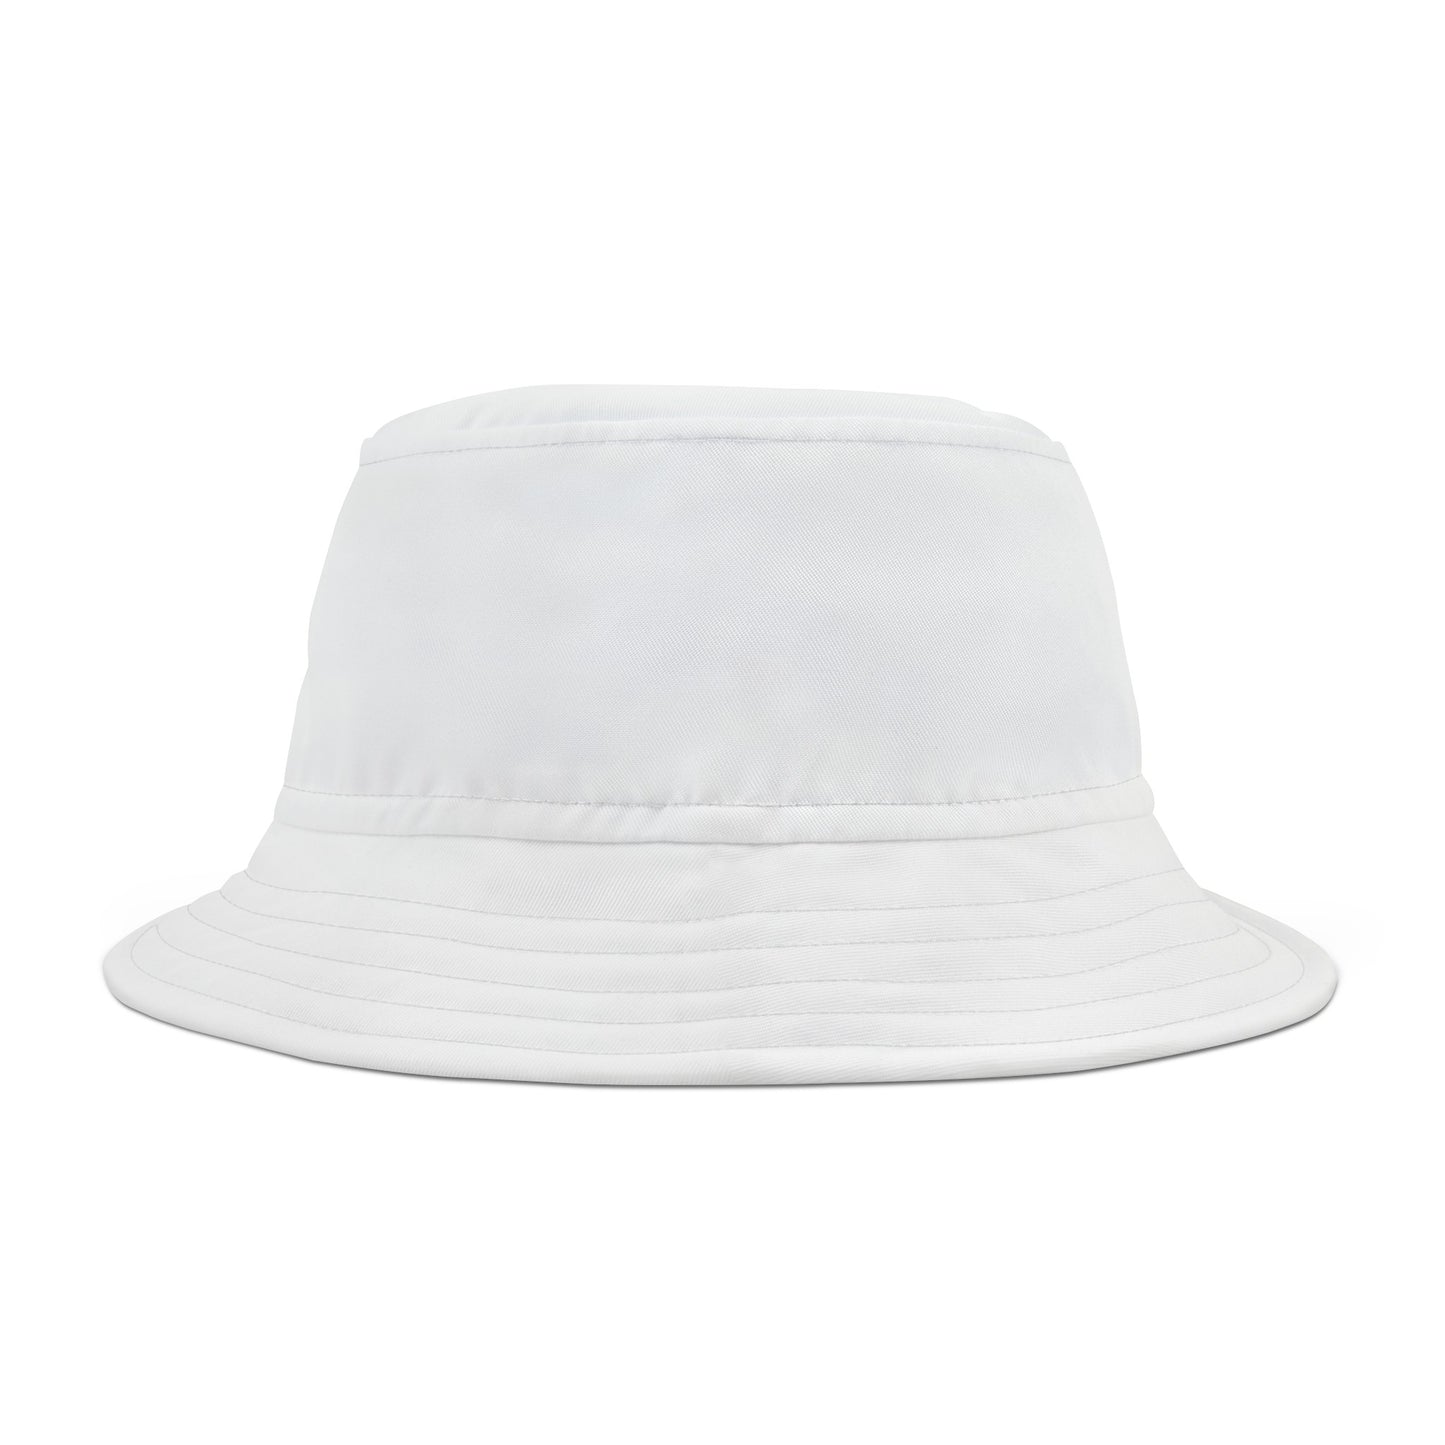 Faith Bucket Hat